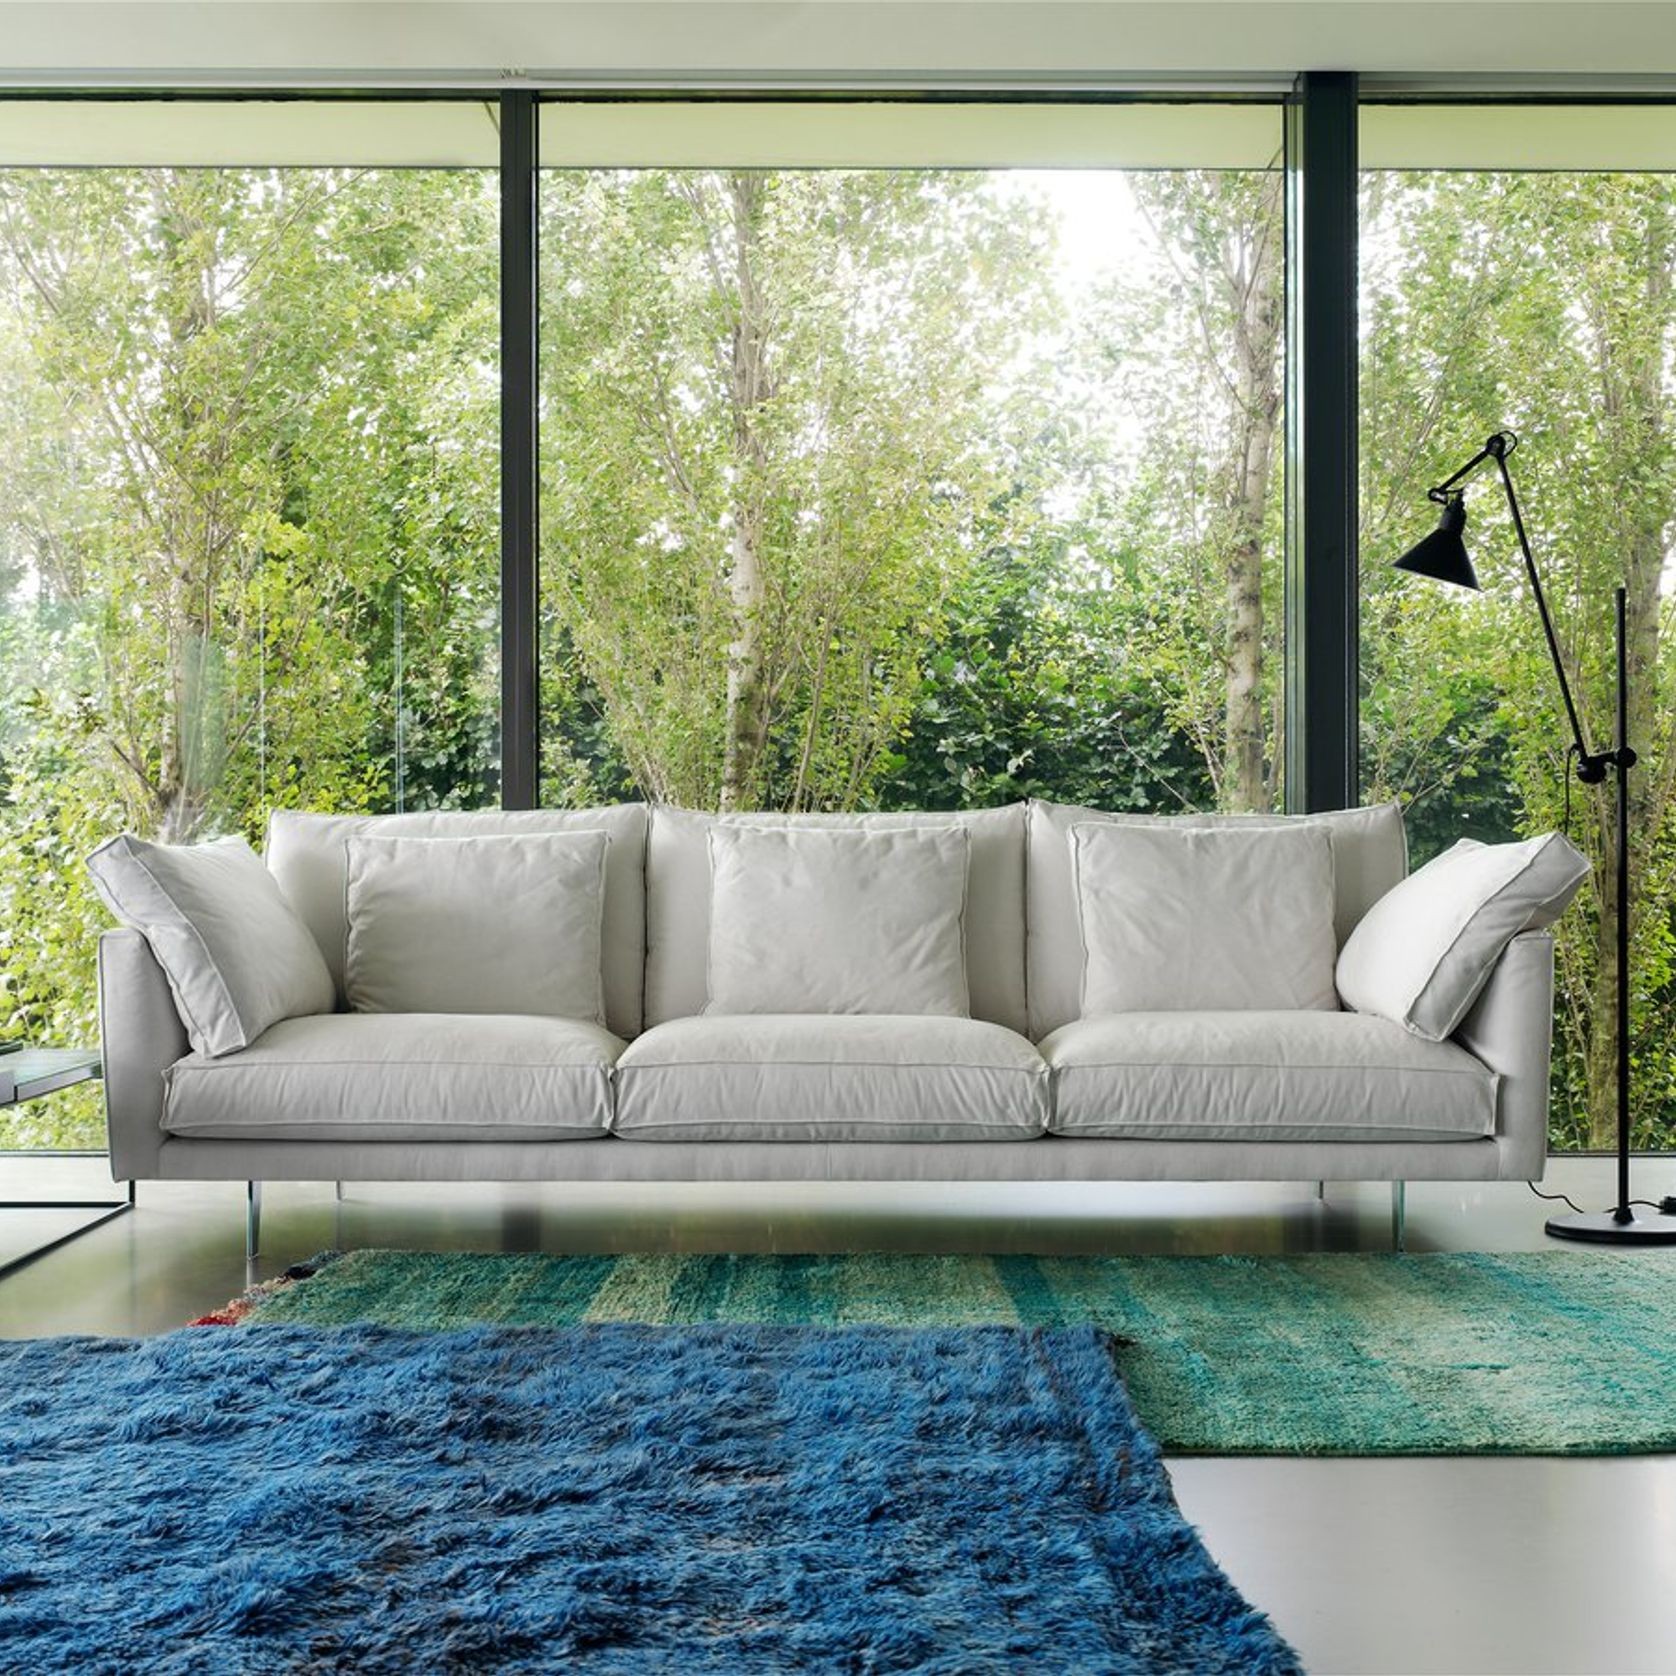 Metropolitan Sofa by Linteloo gallery detail image